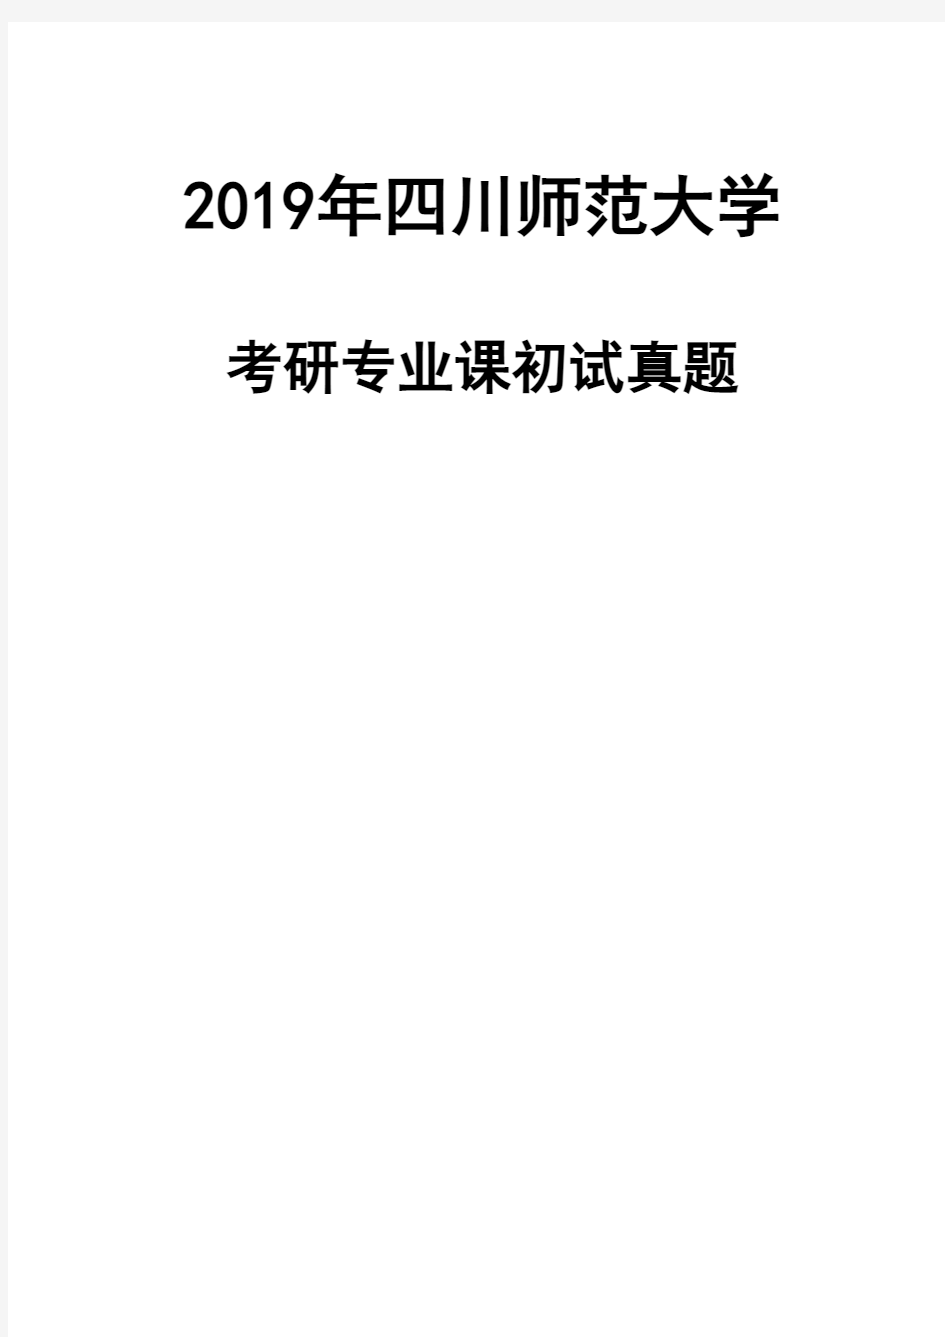 四川师范大学817中国文学2019年考研初试真题